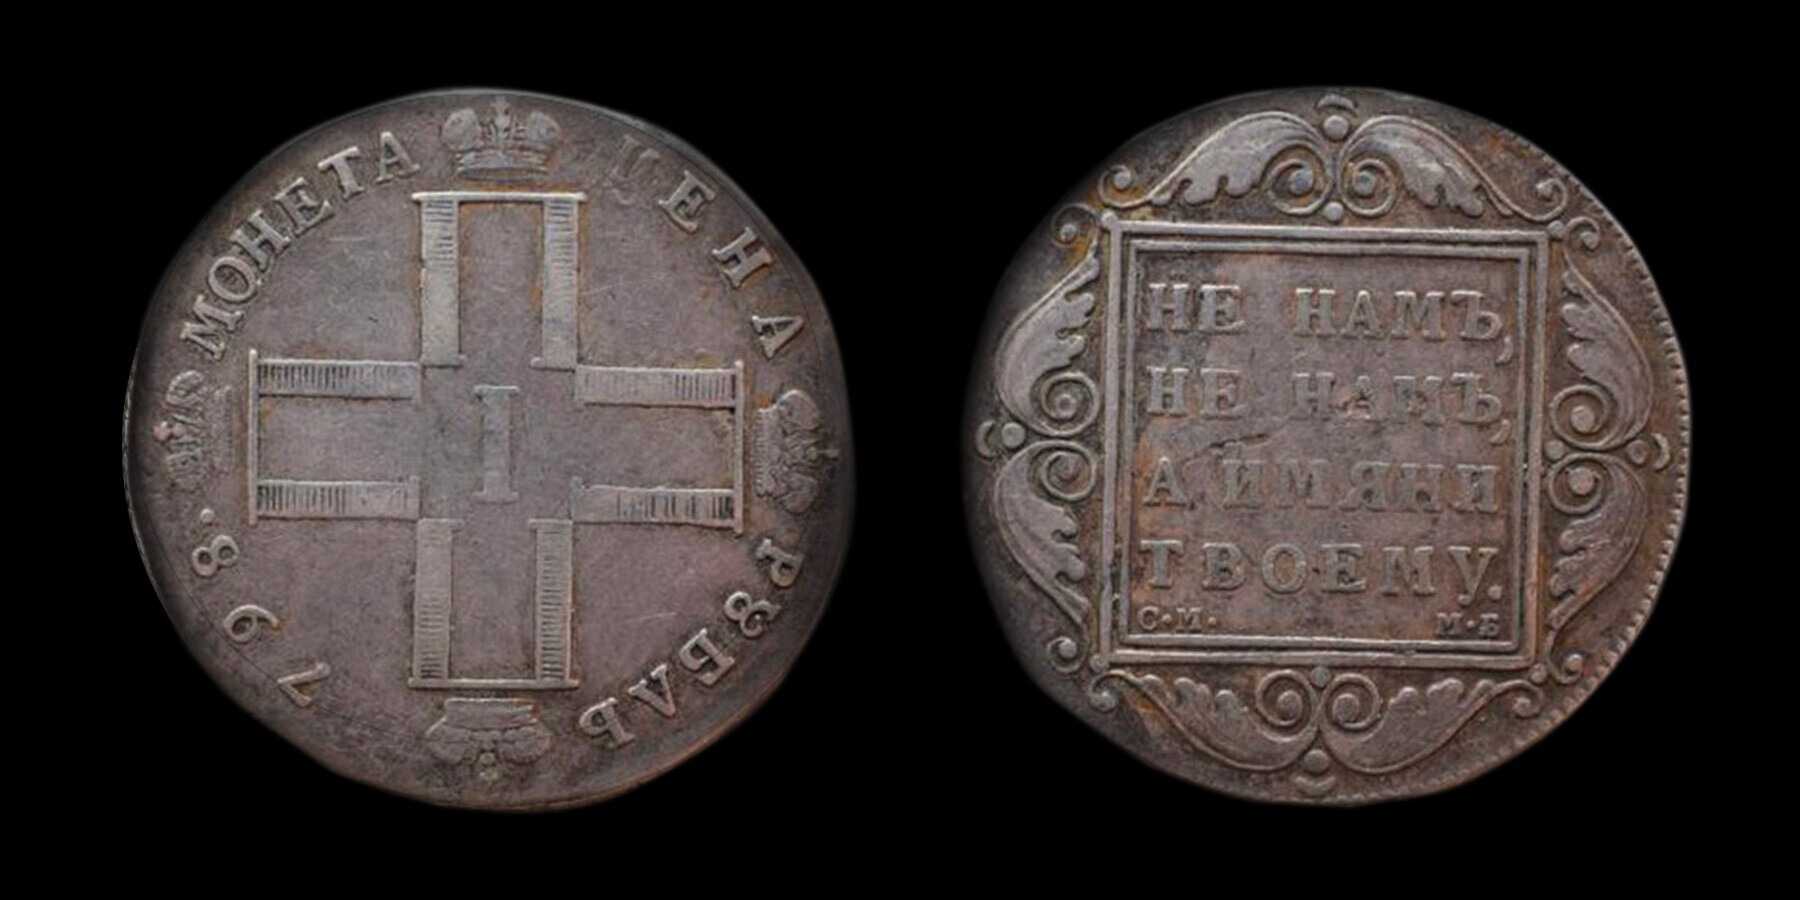 Uang logam 1 rubel dari era Paul I (1789).